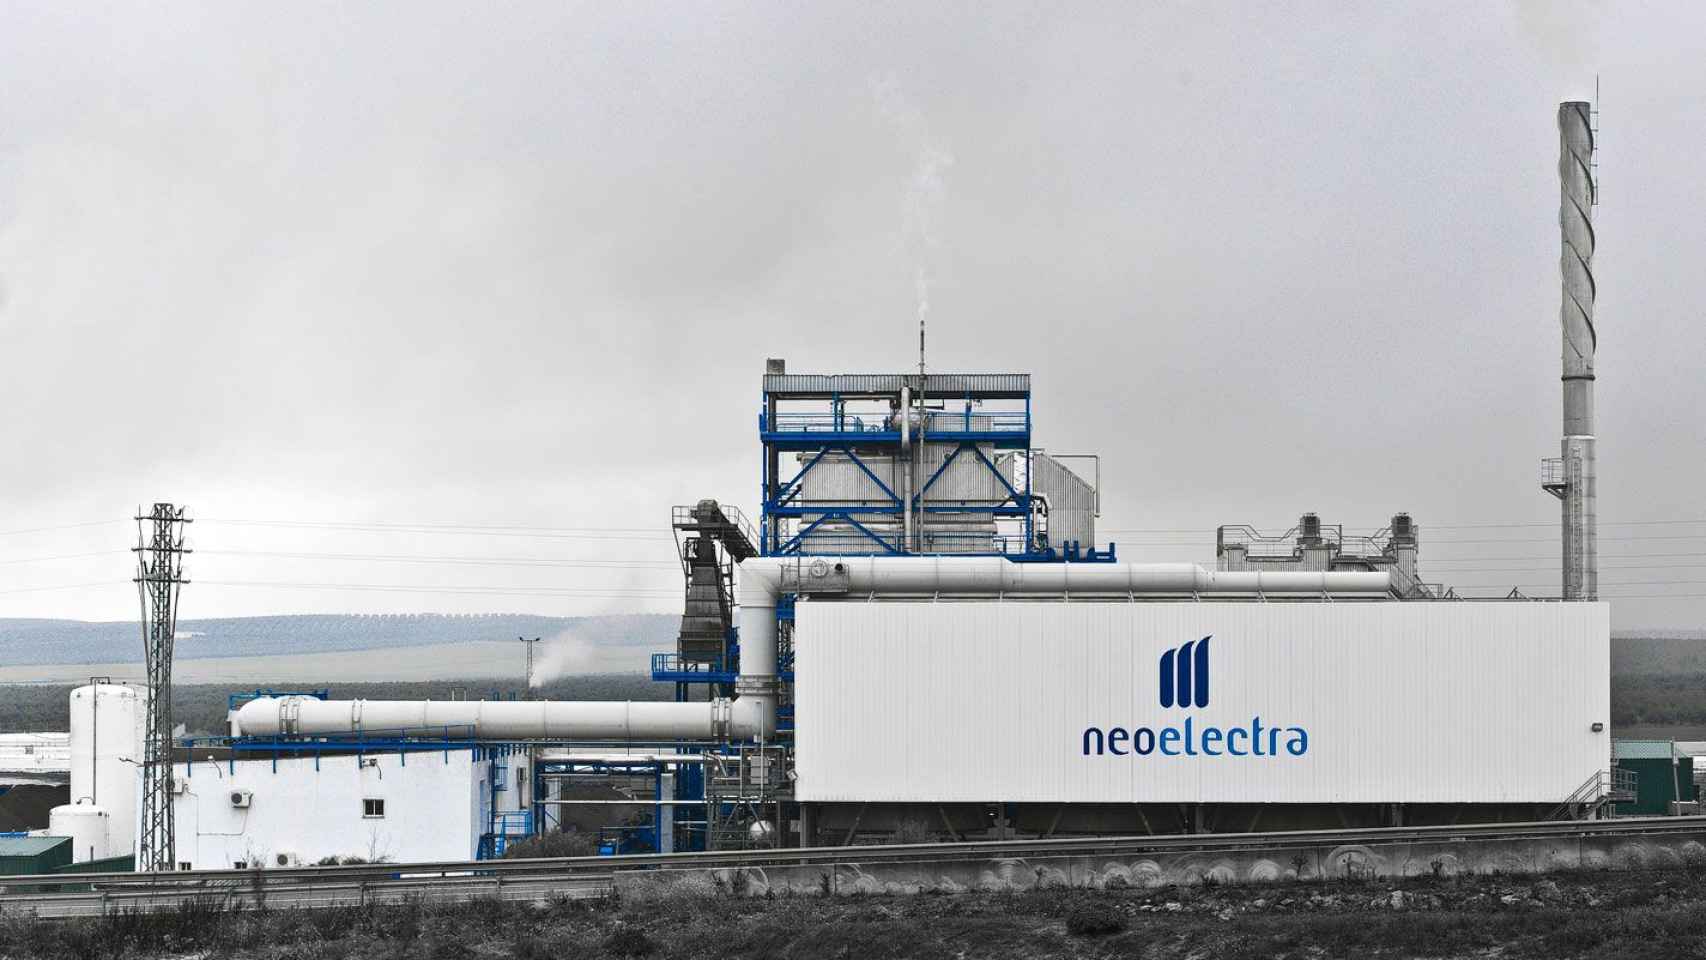 La empresa de hidroenergía Neoelectra que también se fuga de Cataluña / CG